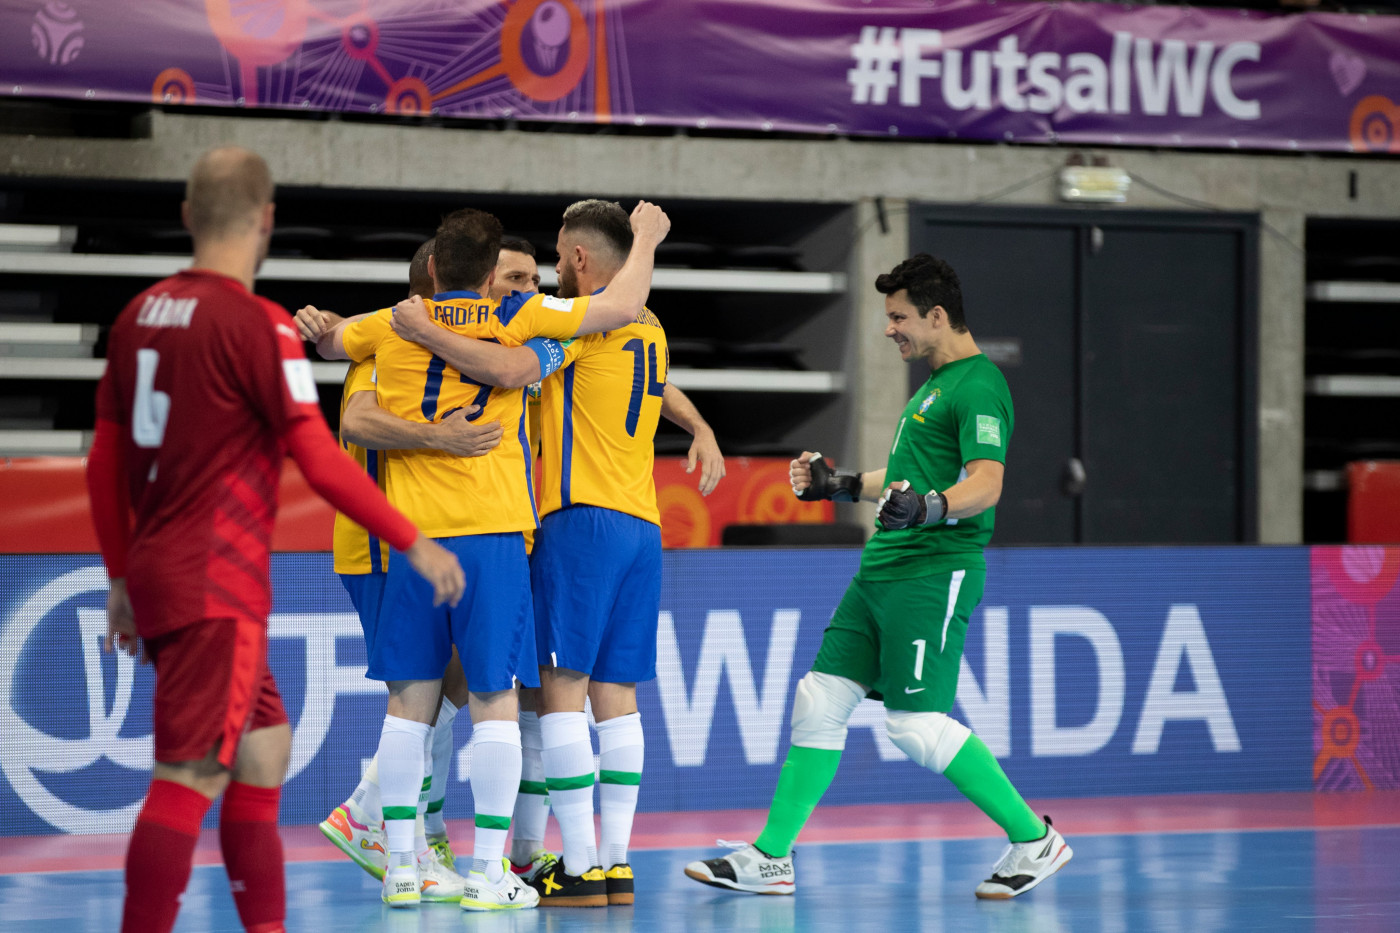 Derrota de Portugal mantém Brasil como único país a unificar os títulos  mundiais de futebol e futsal, mundo do futsal